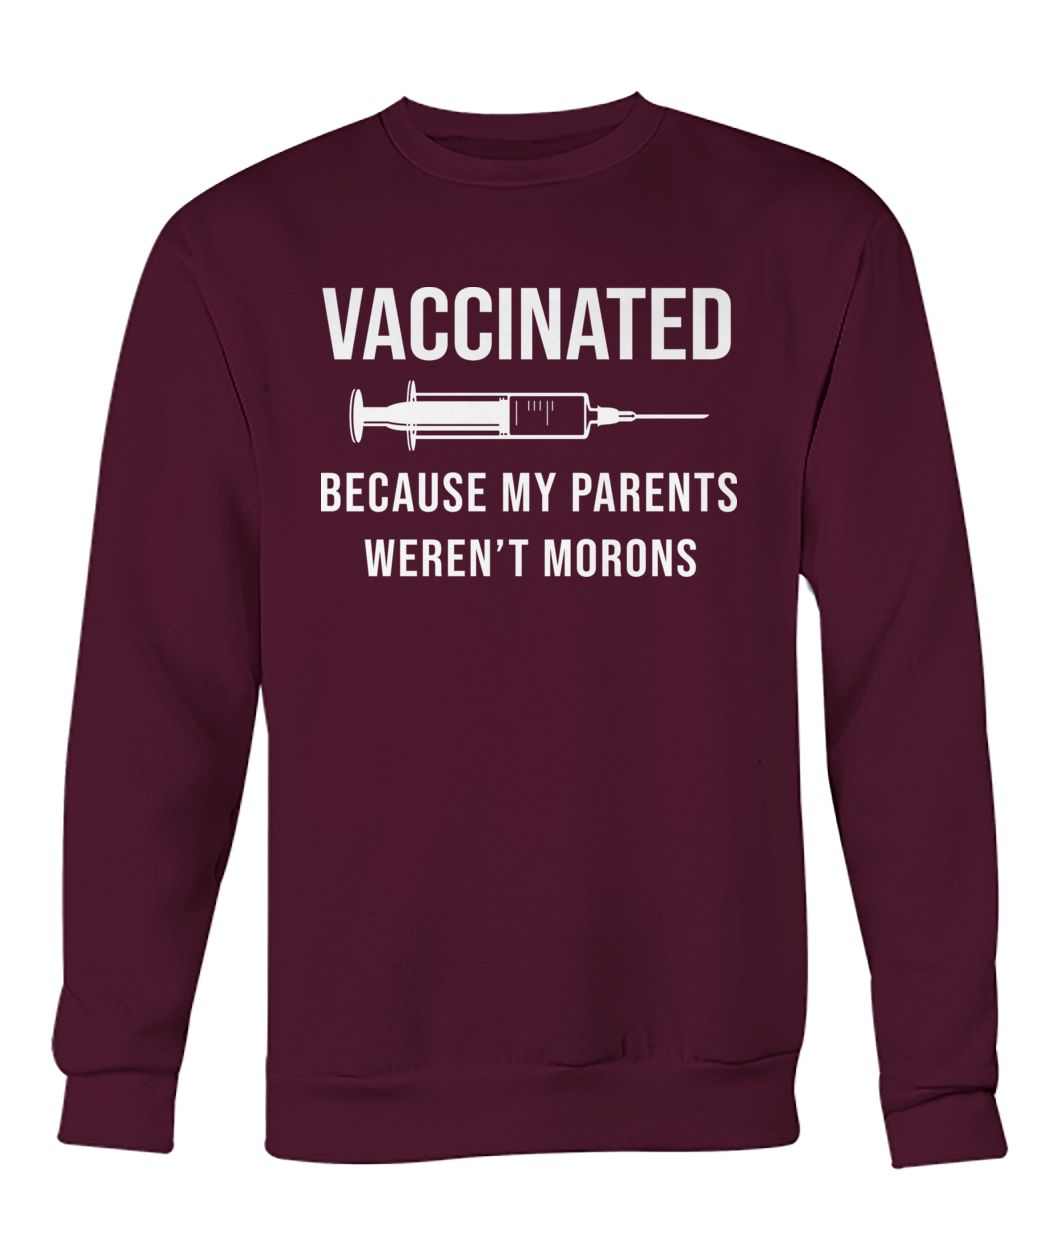 Nurse vaccinated because my parents weren't morons crew neck sweatshirt